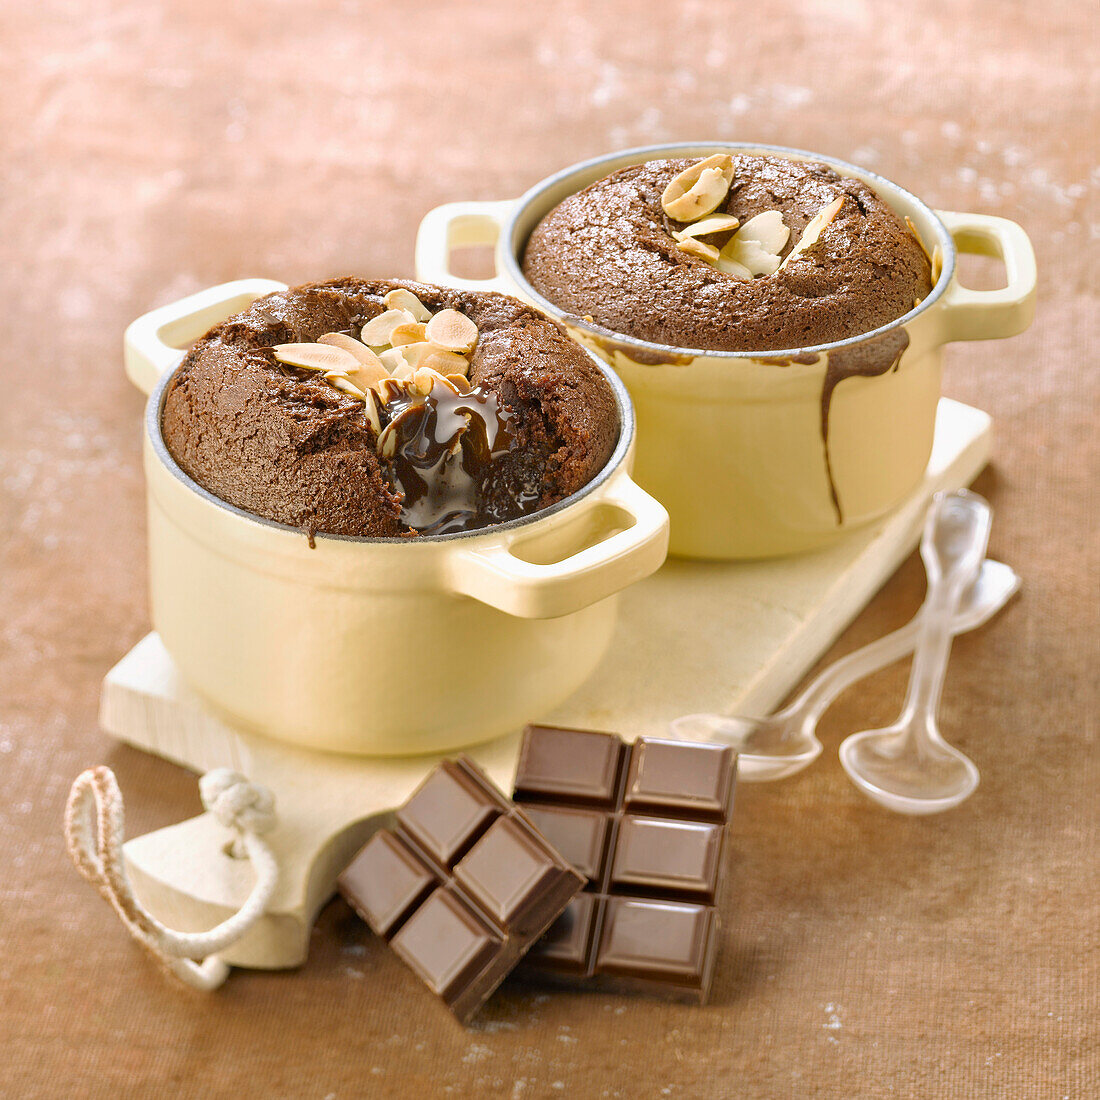 Moelleux (kleiner franz. Kuchen) mit Schokolade und Mandeln